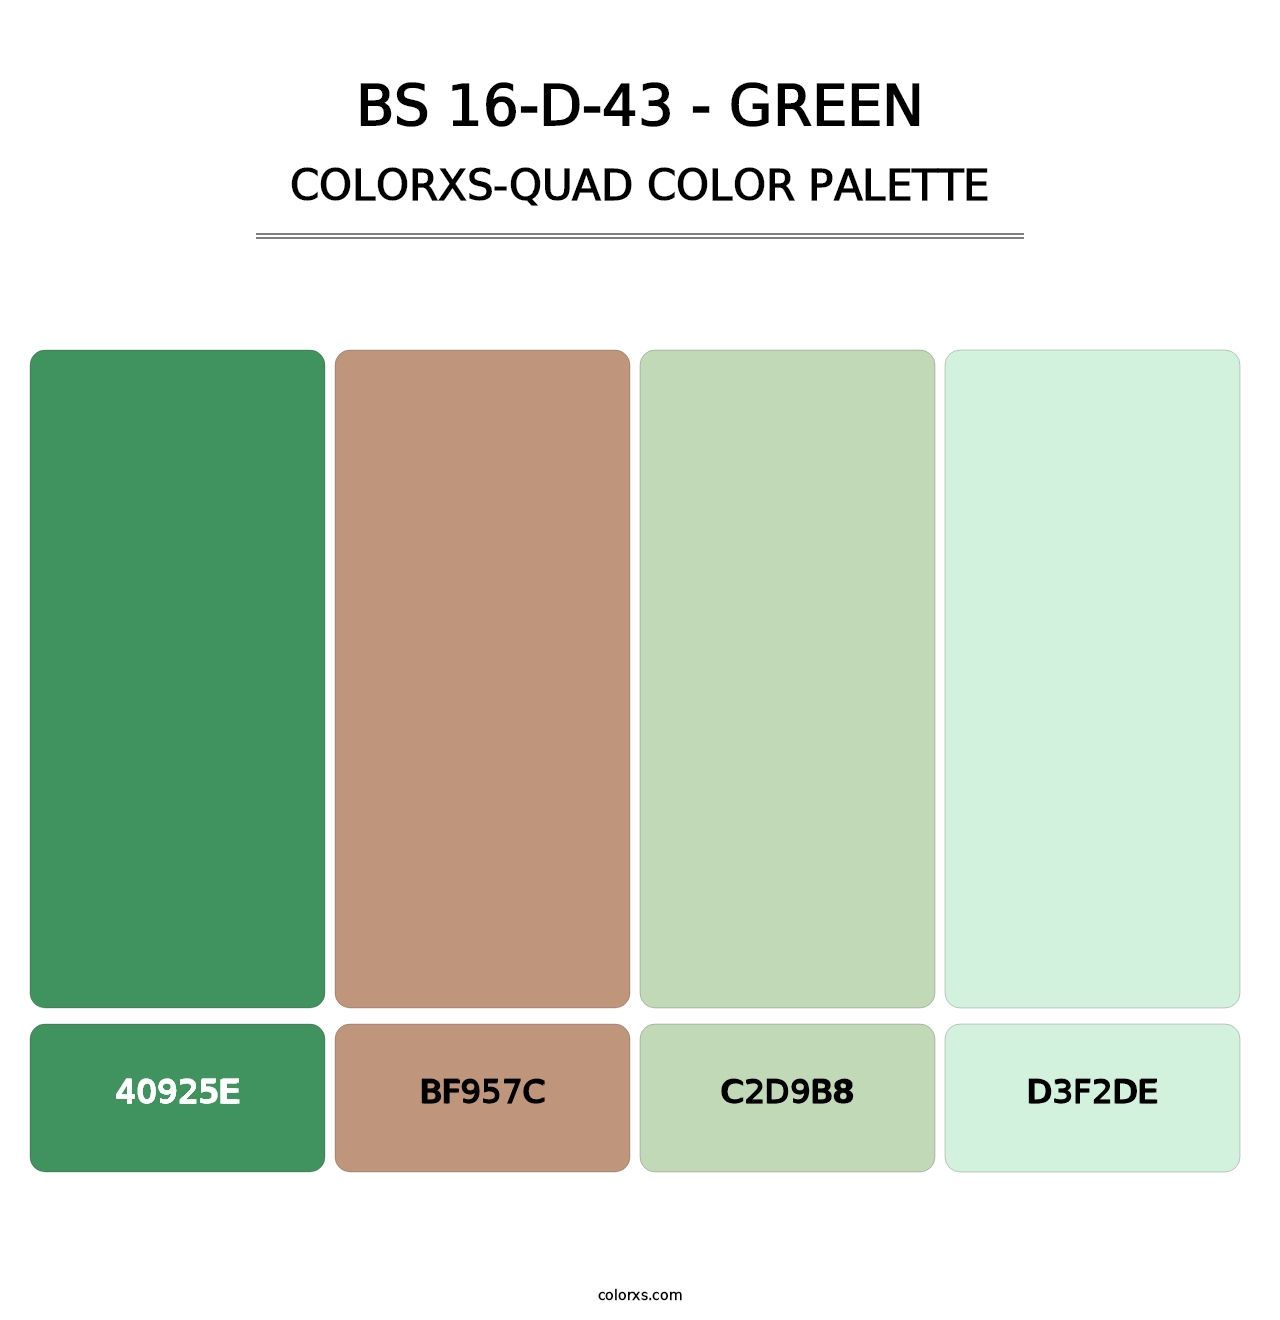 BS 16-D-43 - Green - Colorxs Quad Palette